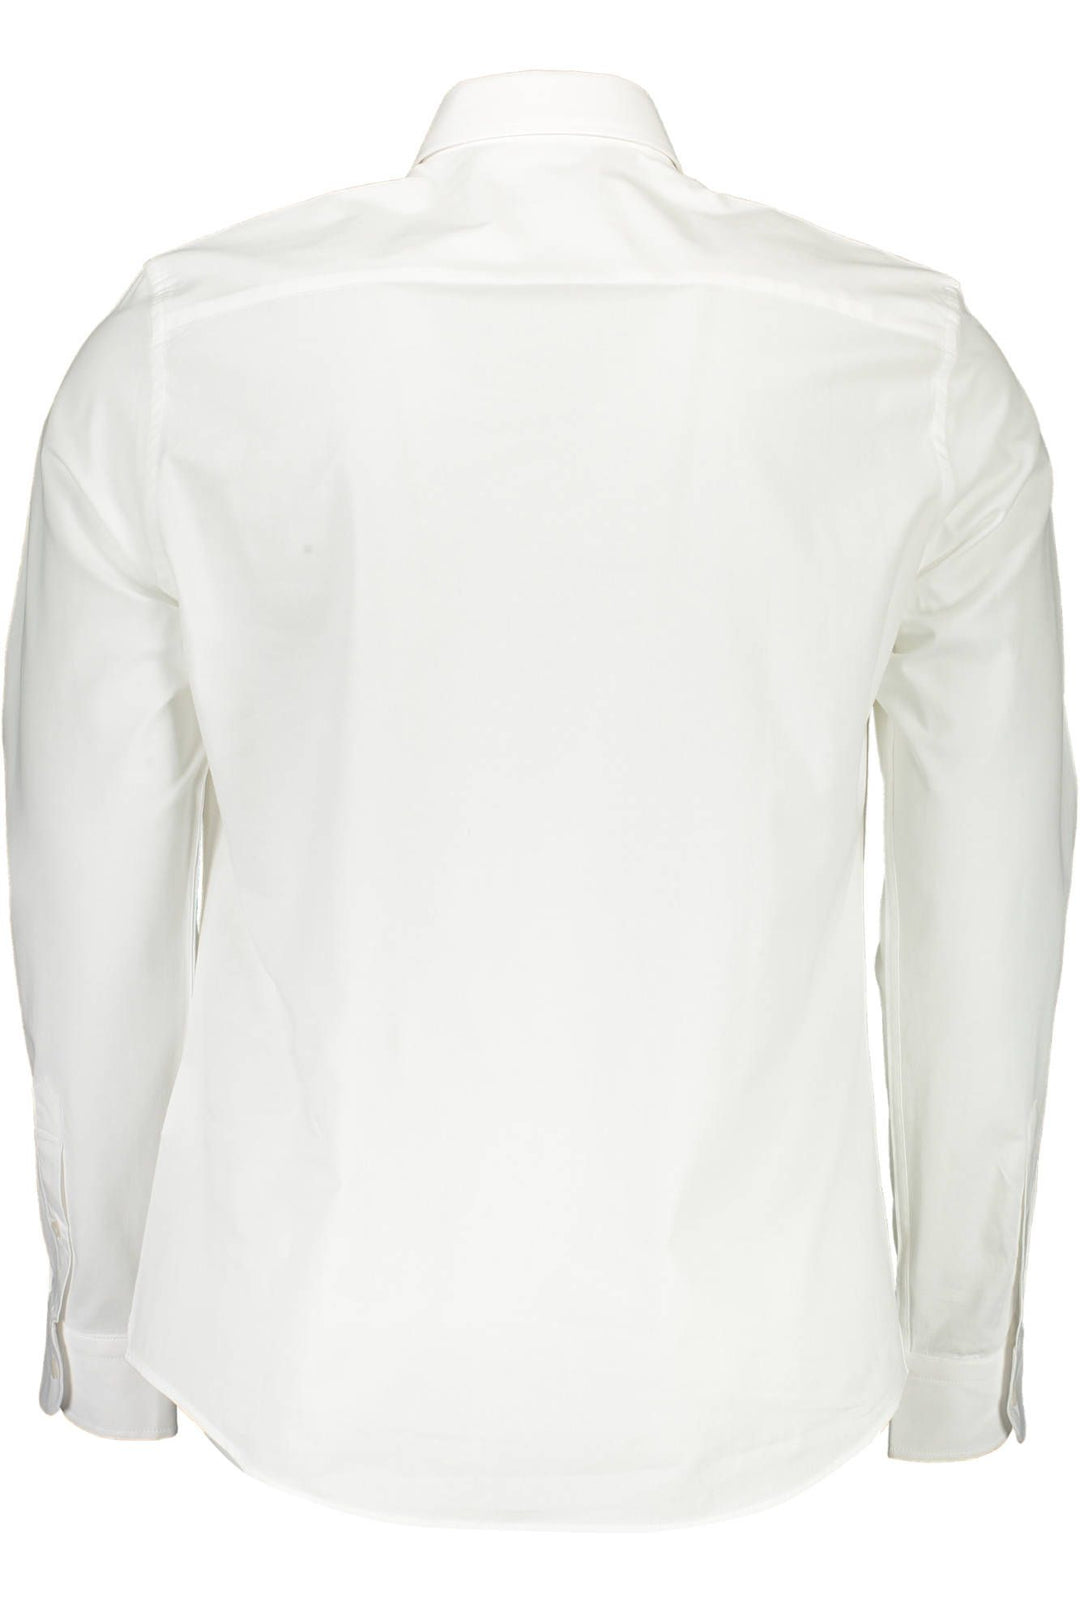 North Sails White Cotton Shirt